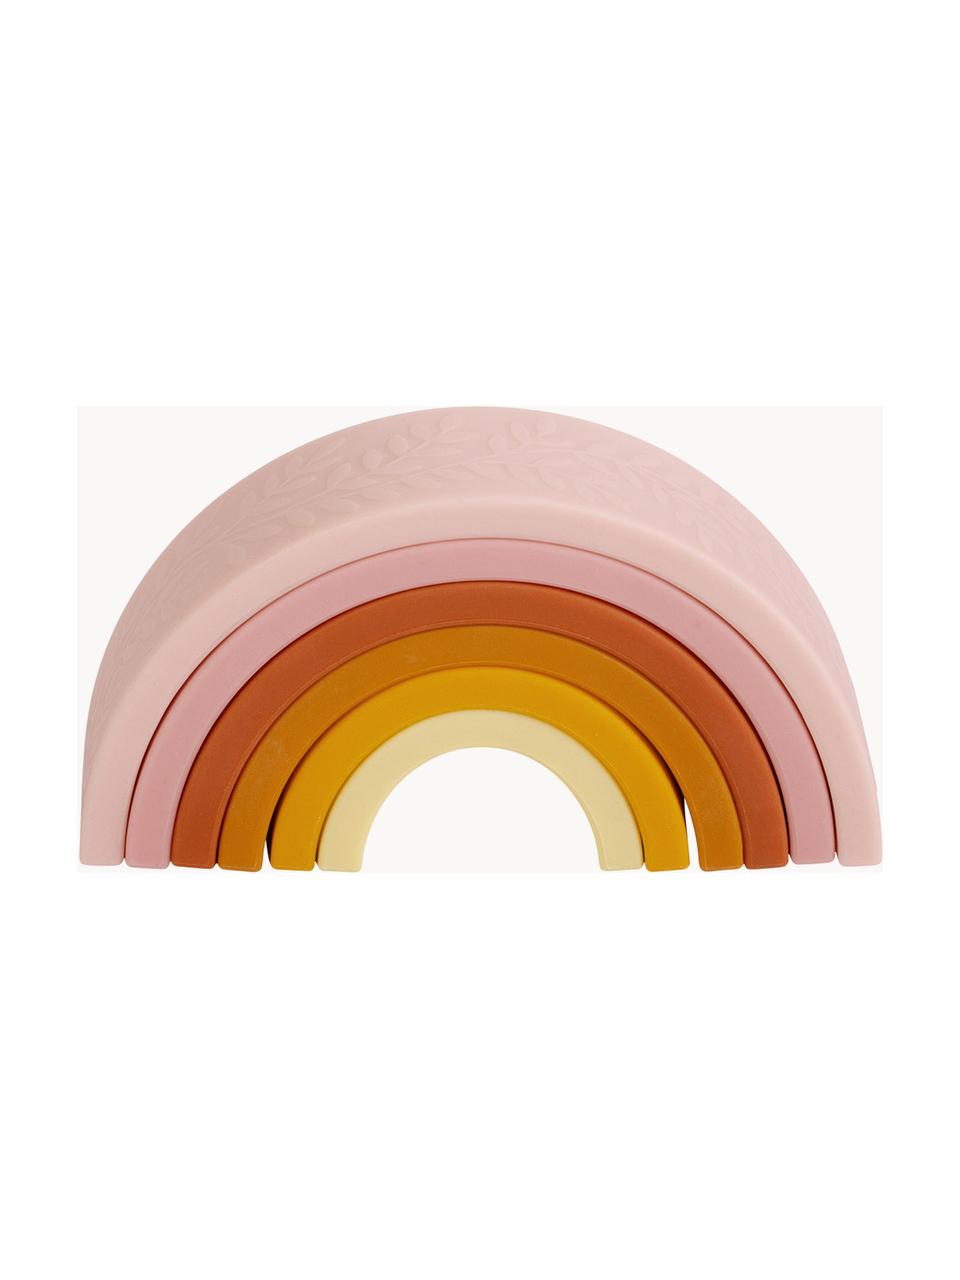 Gioco impilabile Rainbow, Silicone, Tonalità rosa, gialle e arancioni, Larg. 15 x Alt. 7 cm